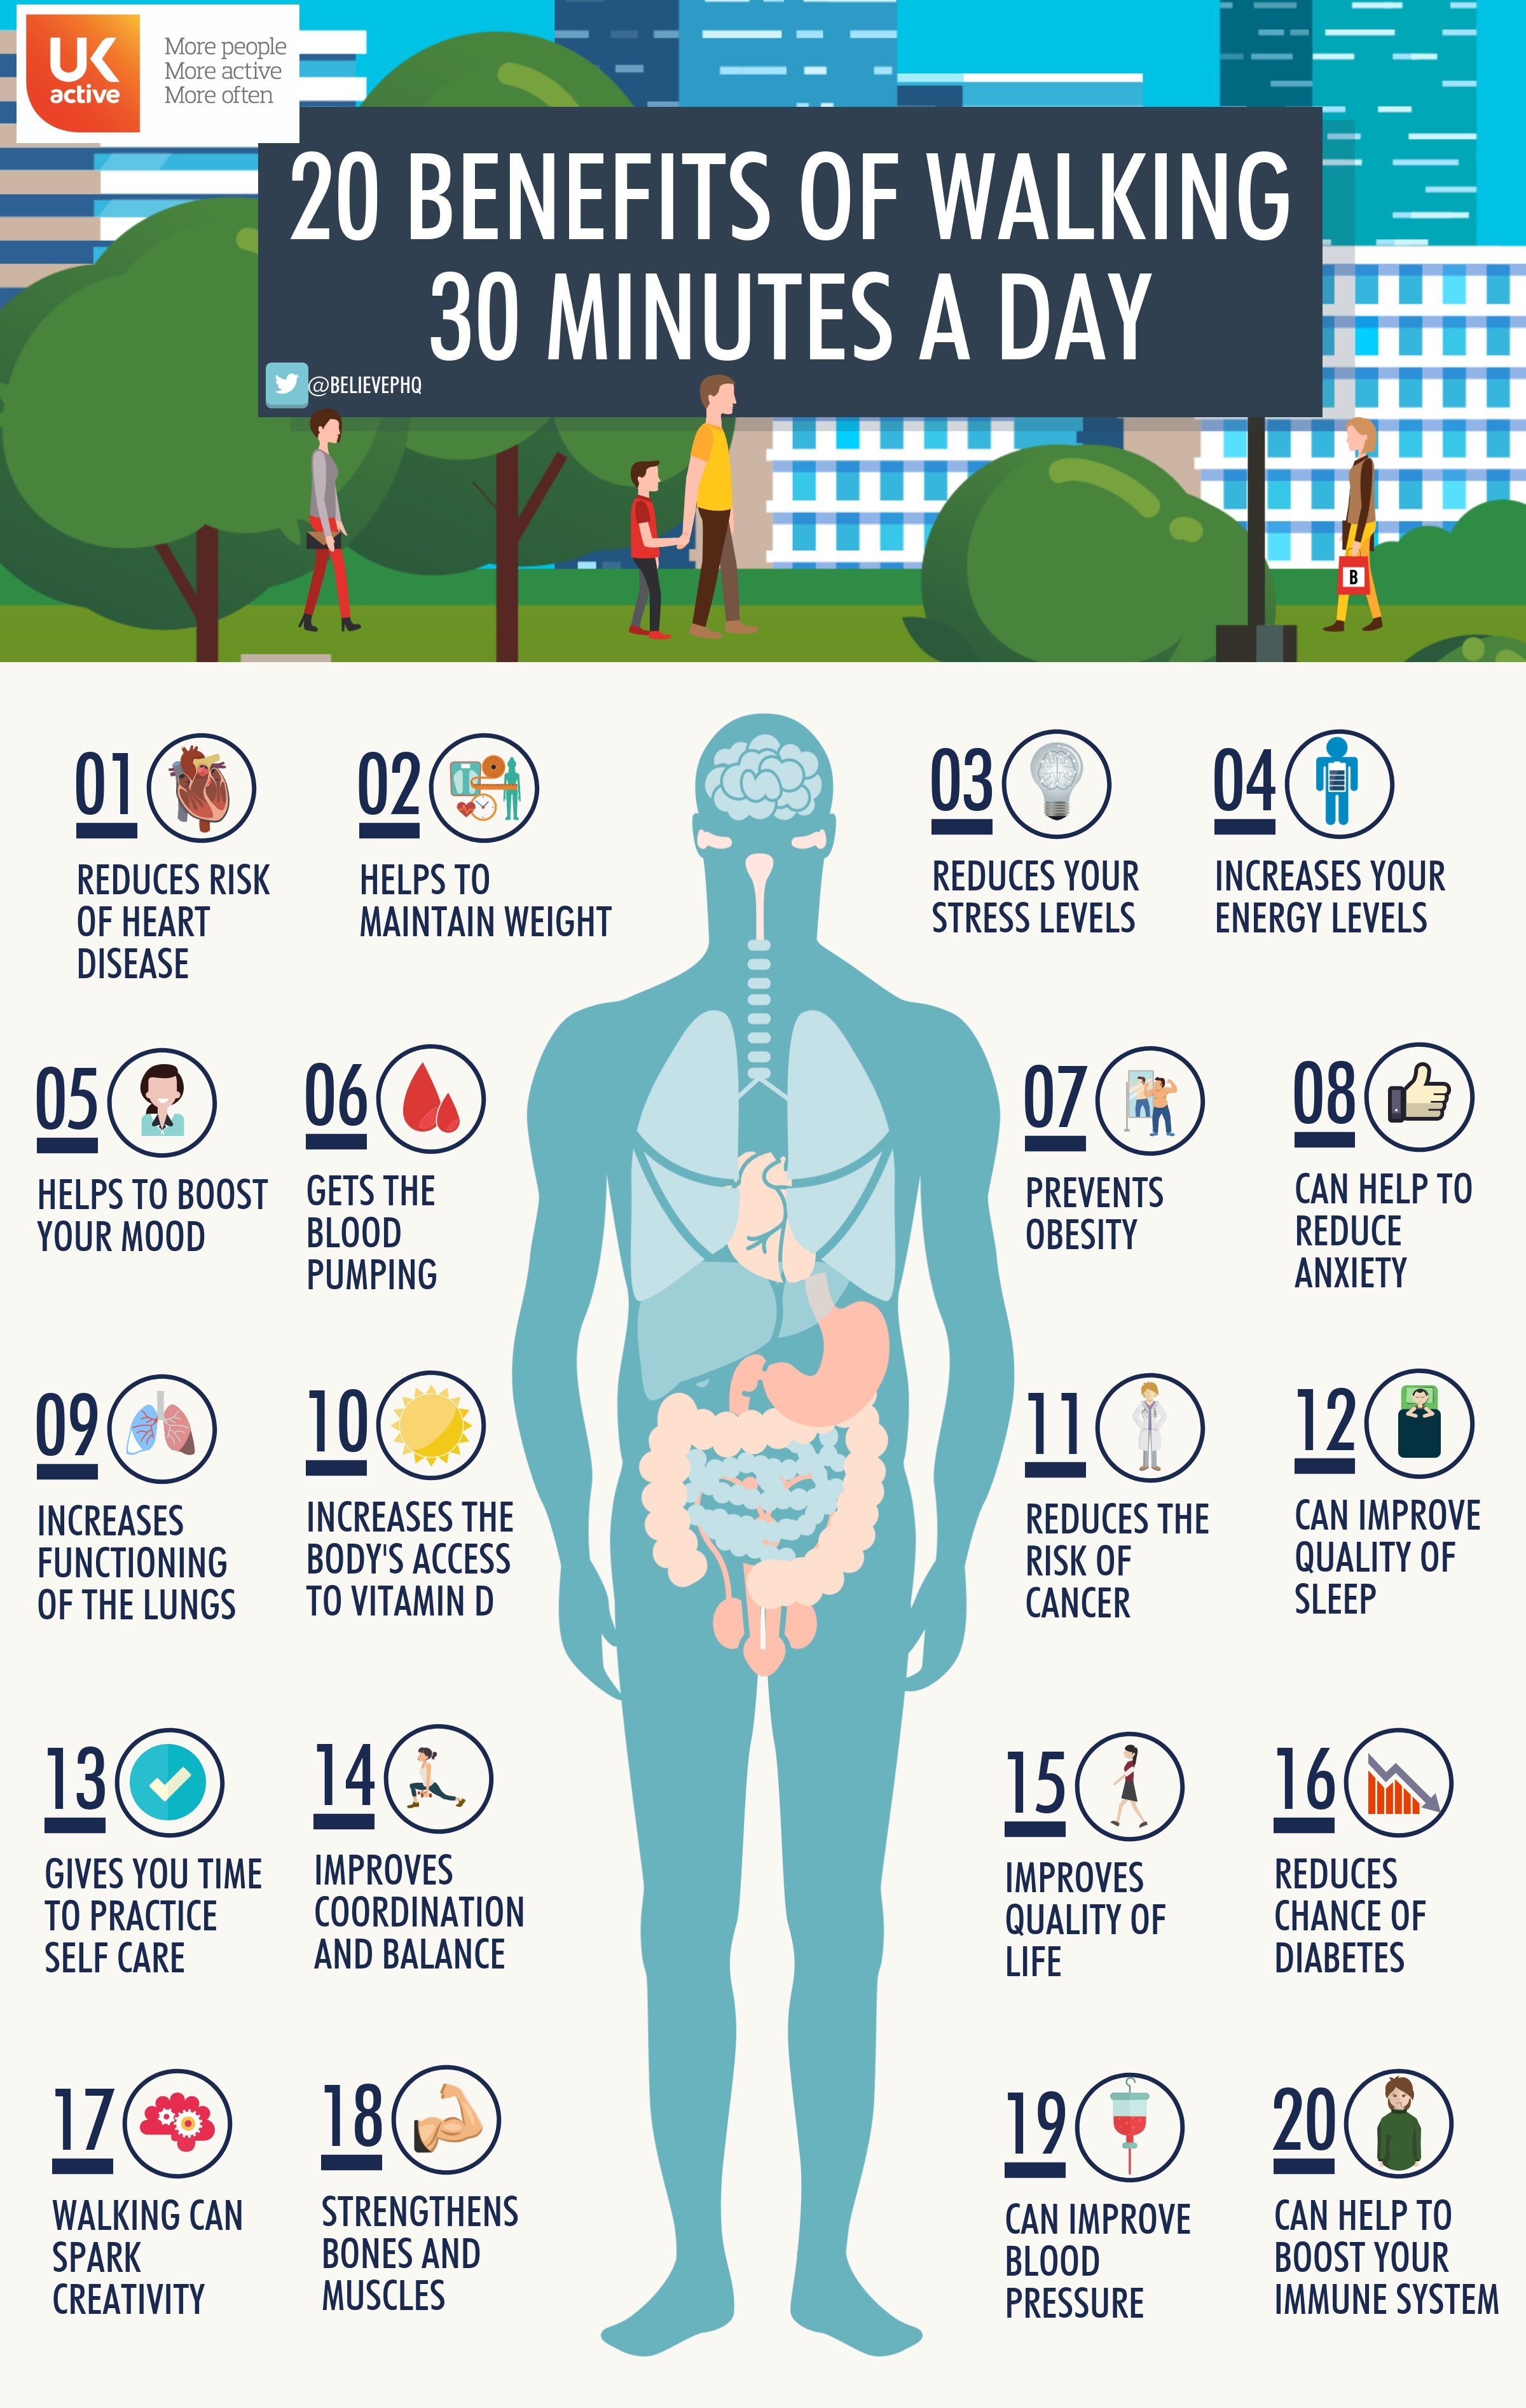 UK-health-effecten-wandelen-scaled poster met 20 voordelen van wandelenjpg